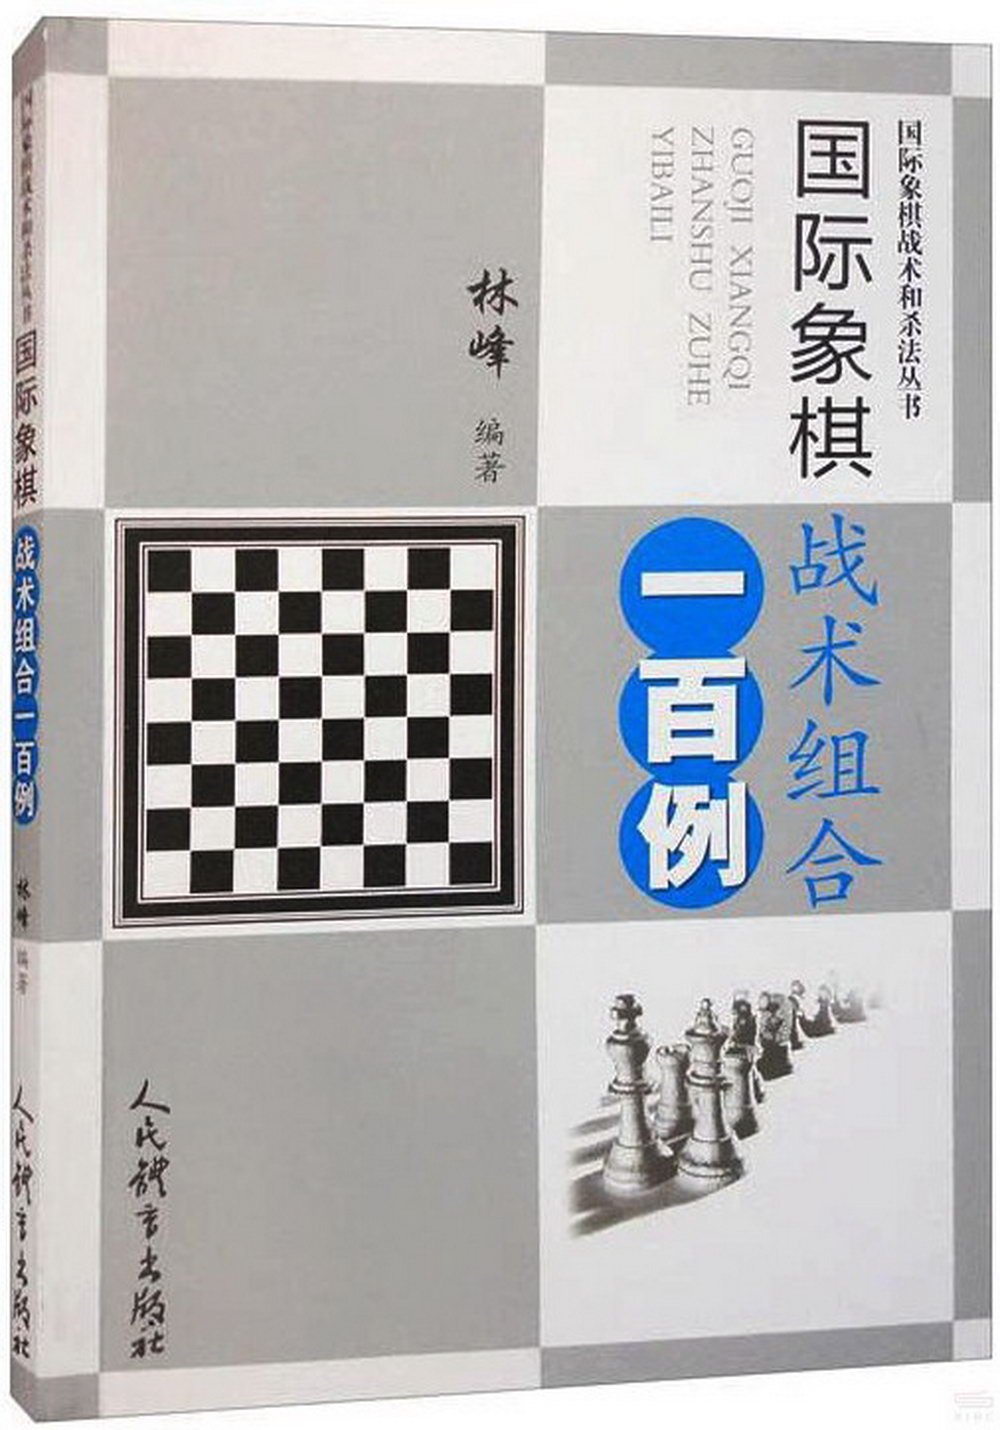 國際象棋戰術組合一百例